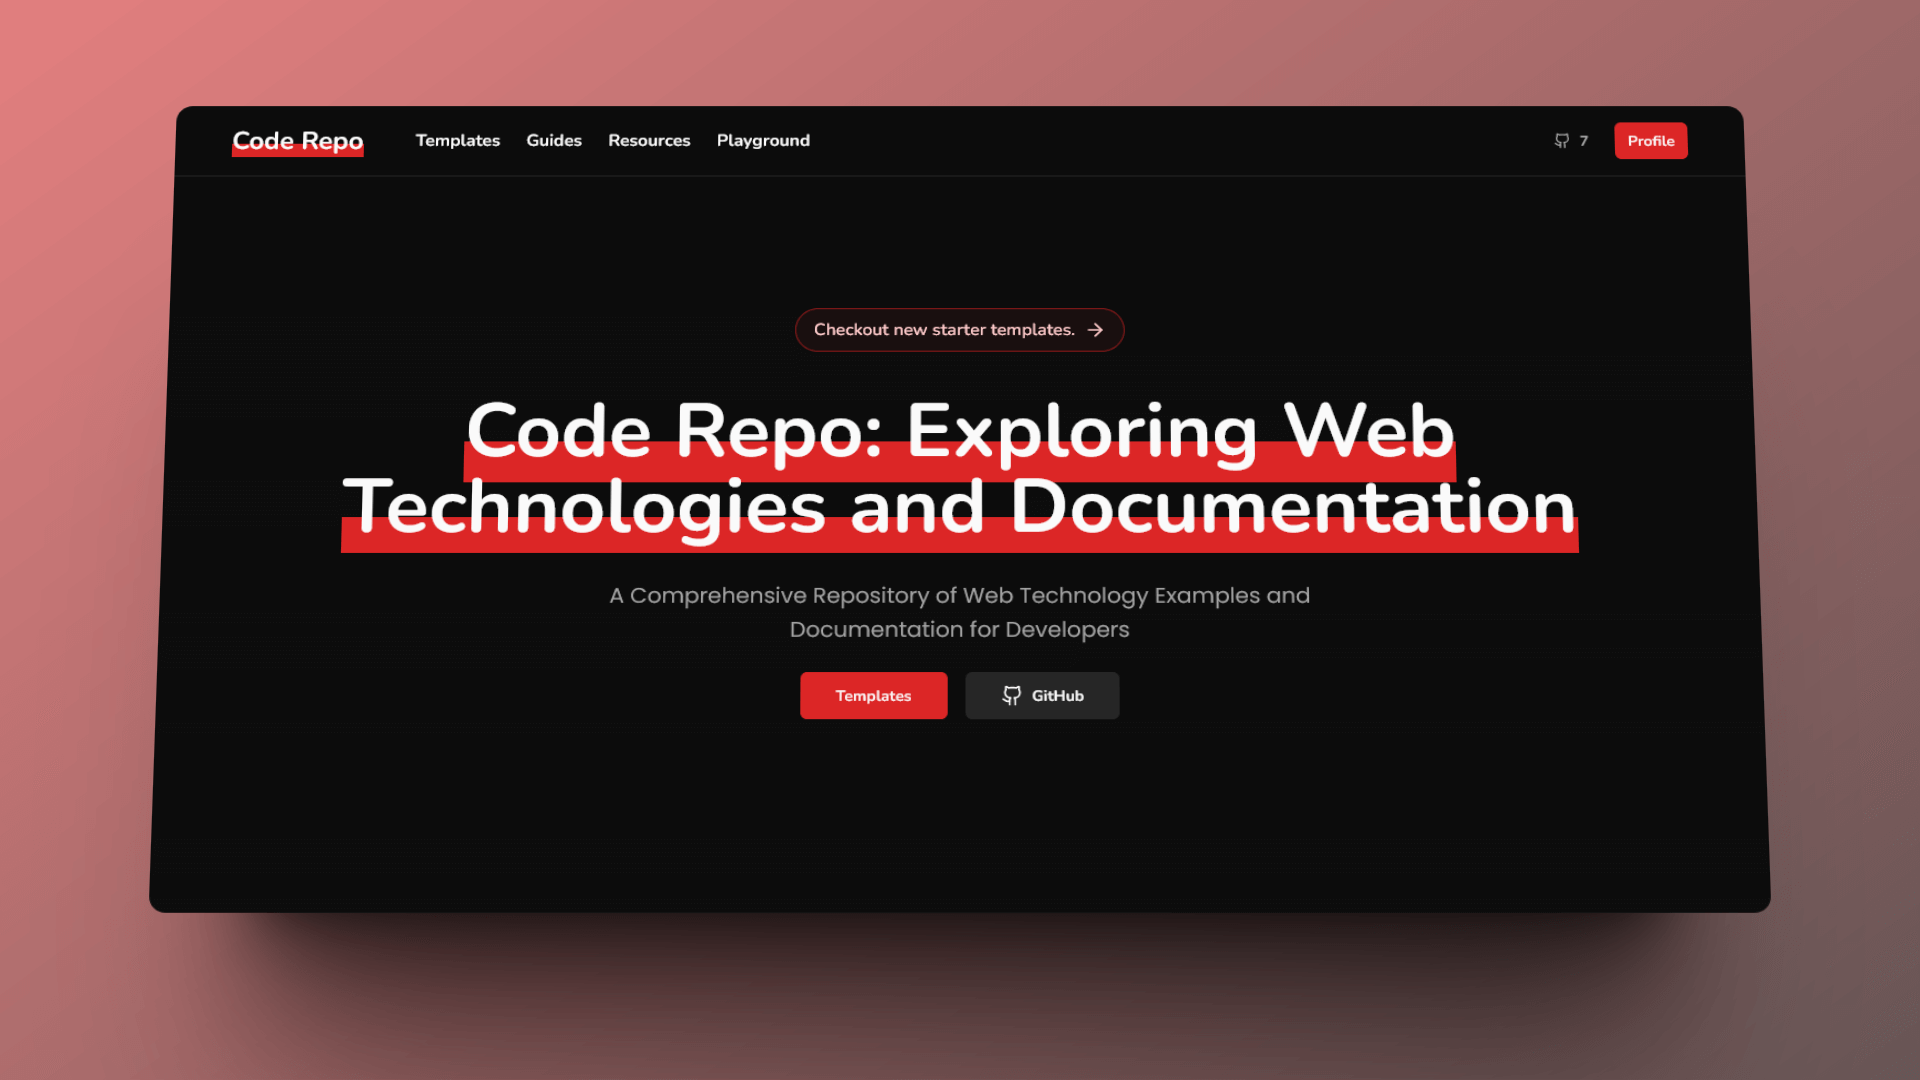 Development of the new Code Repo version